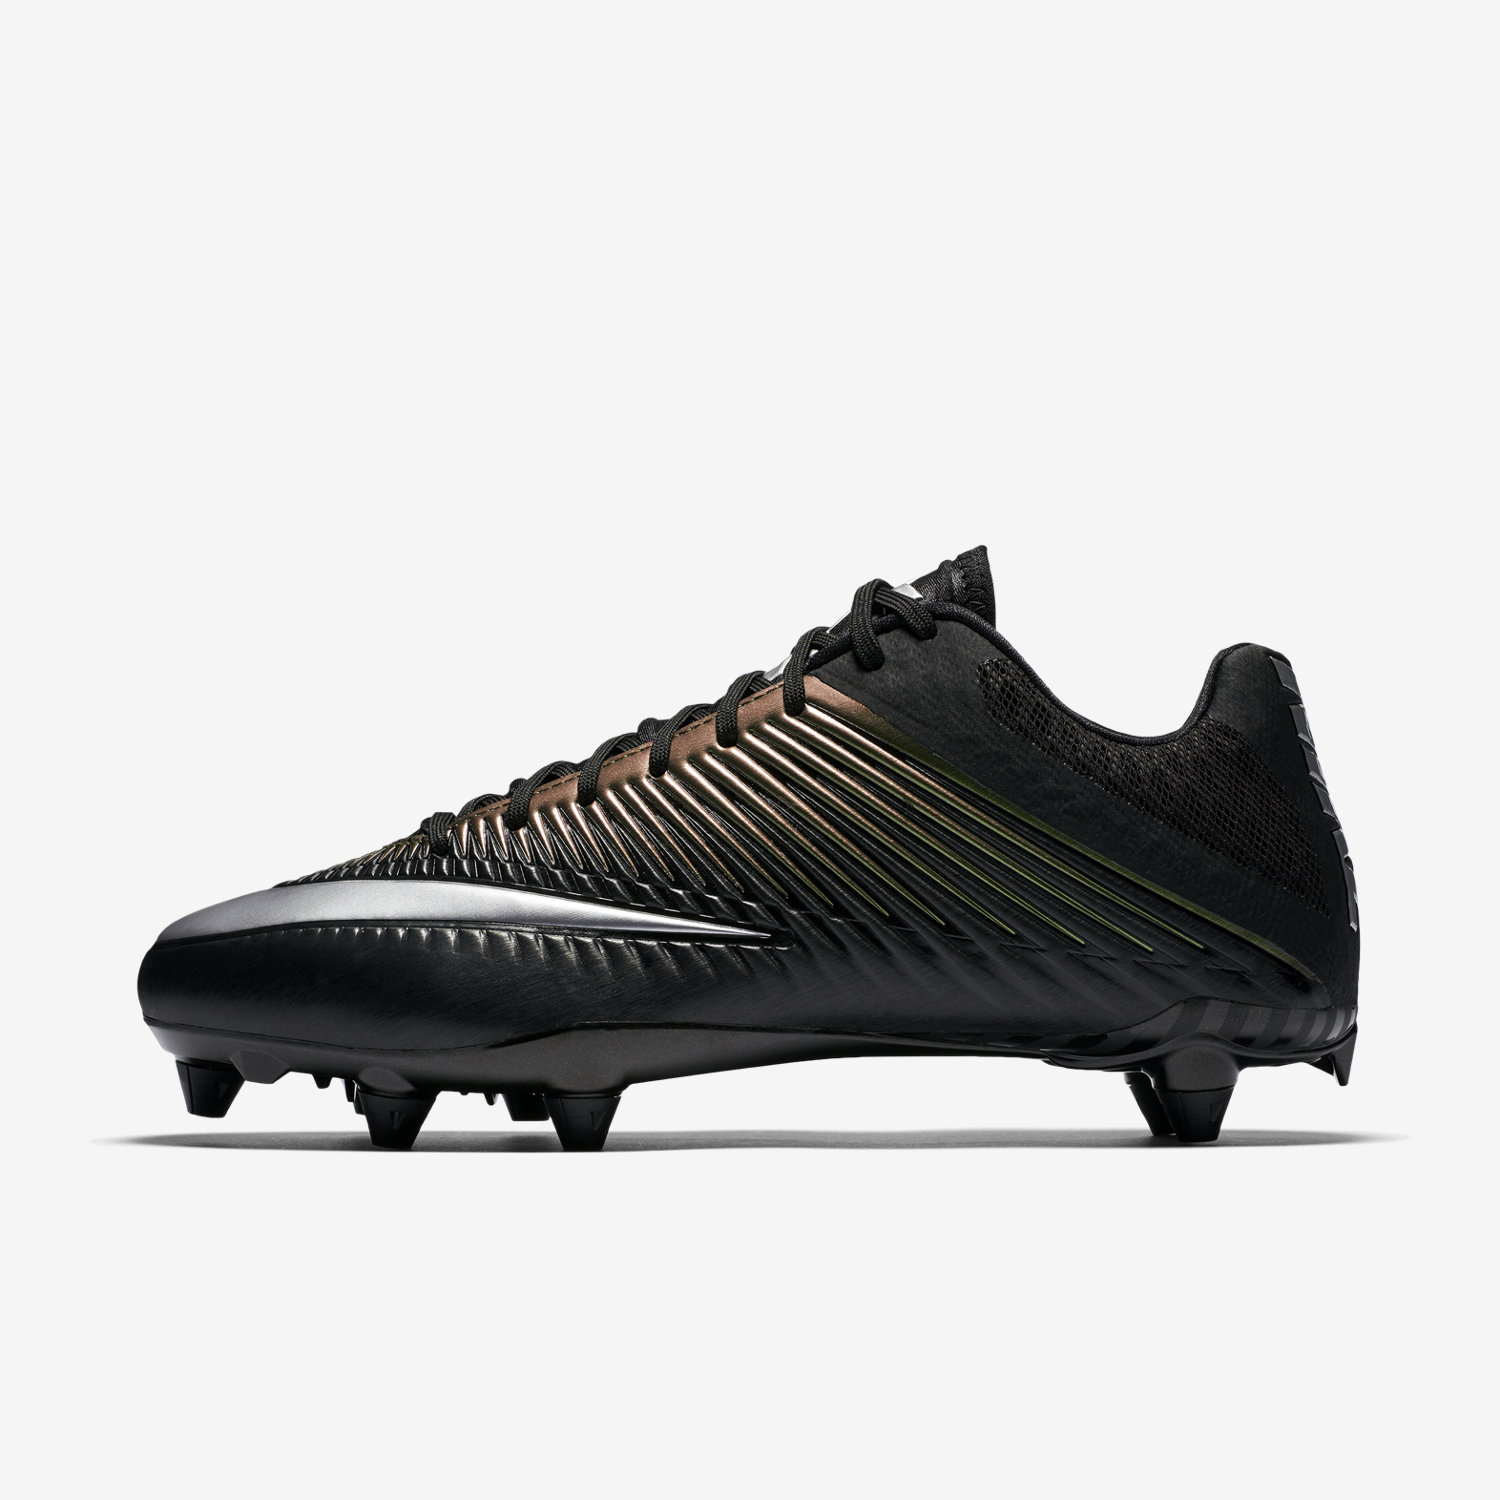 ποδοσφαιρικα παπουτσια ανδρικα Nike Vapor Speed 2 D μαυρα/μαυρα/μεταλλικός ασημι 25737915GJ